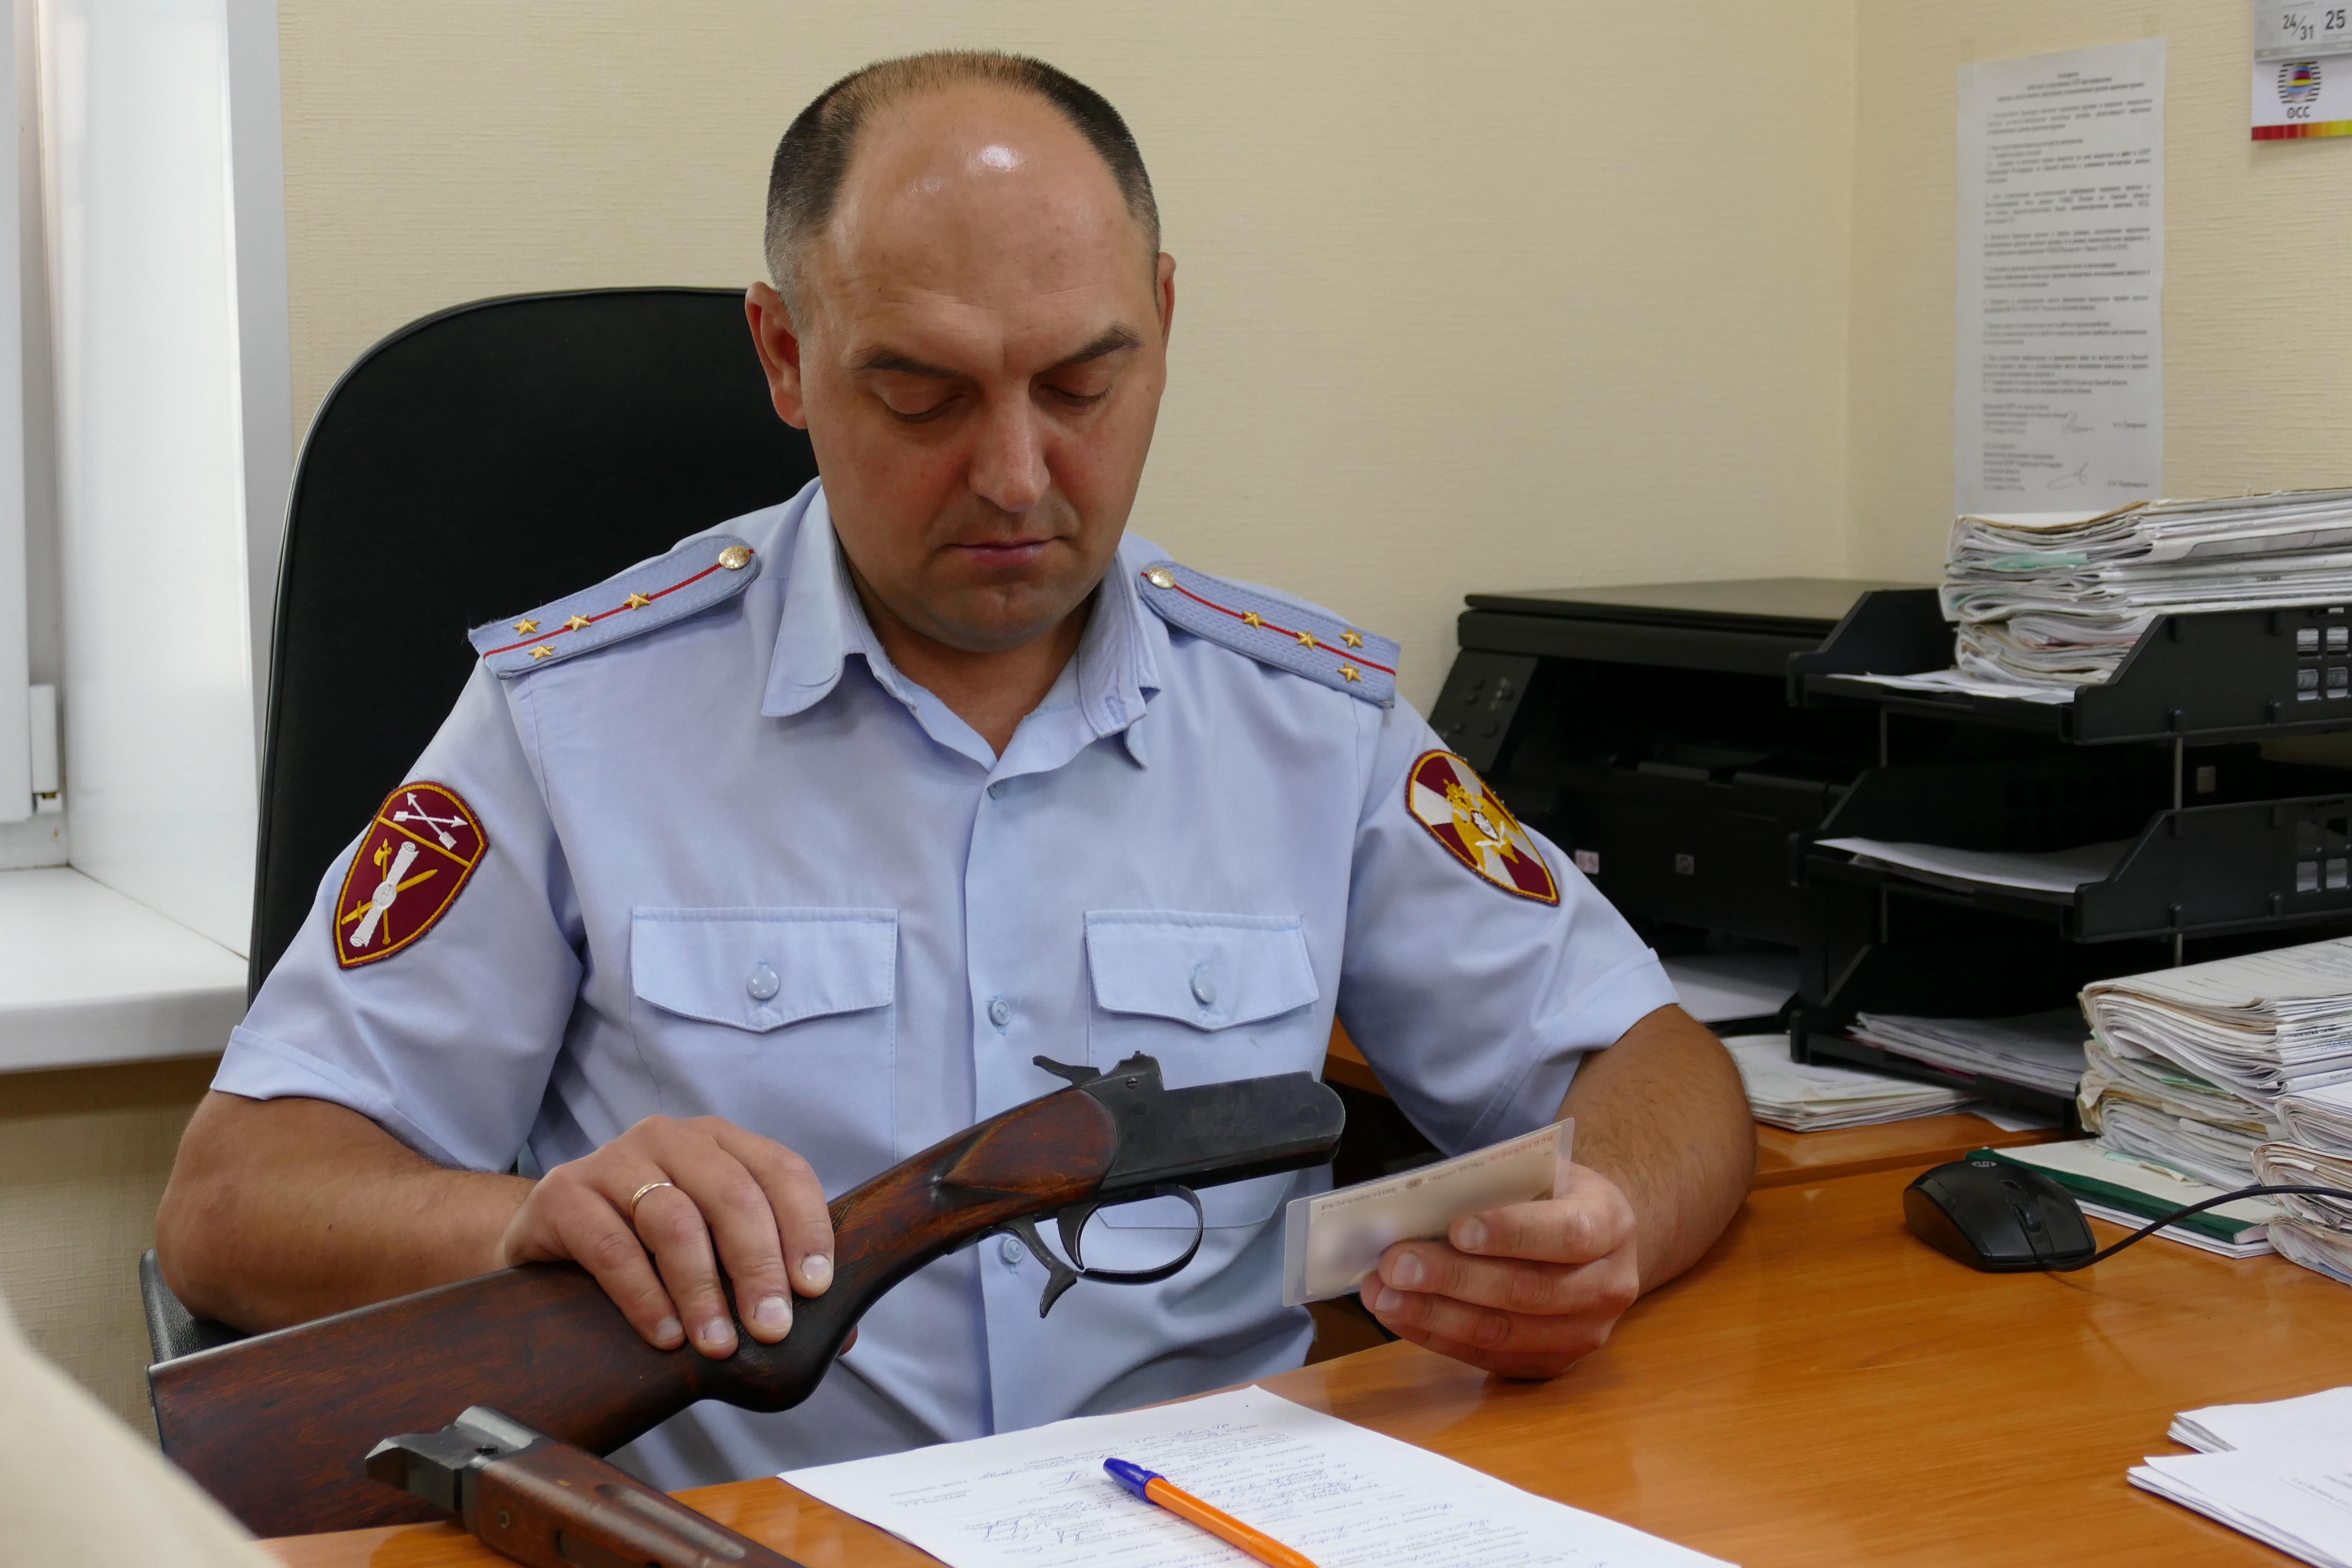 Сотрудники лицензионно-разрешительной работы Управления Росгвардии по Омской области напоминают об ответственности за утрату оружия